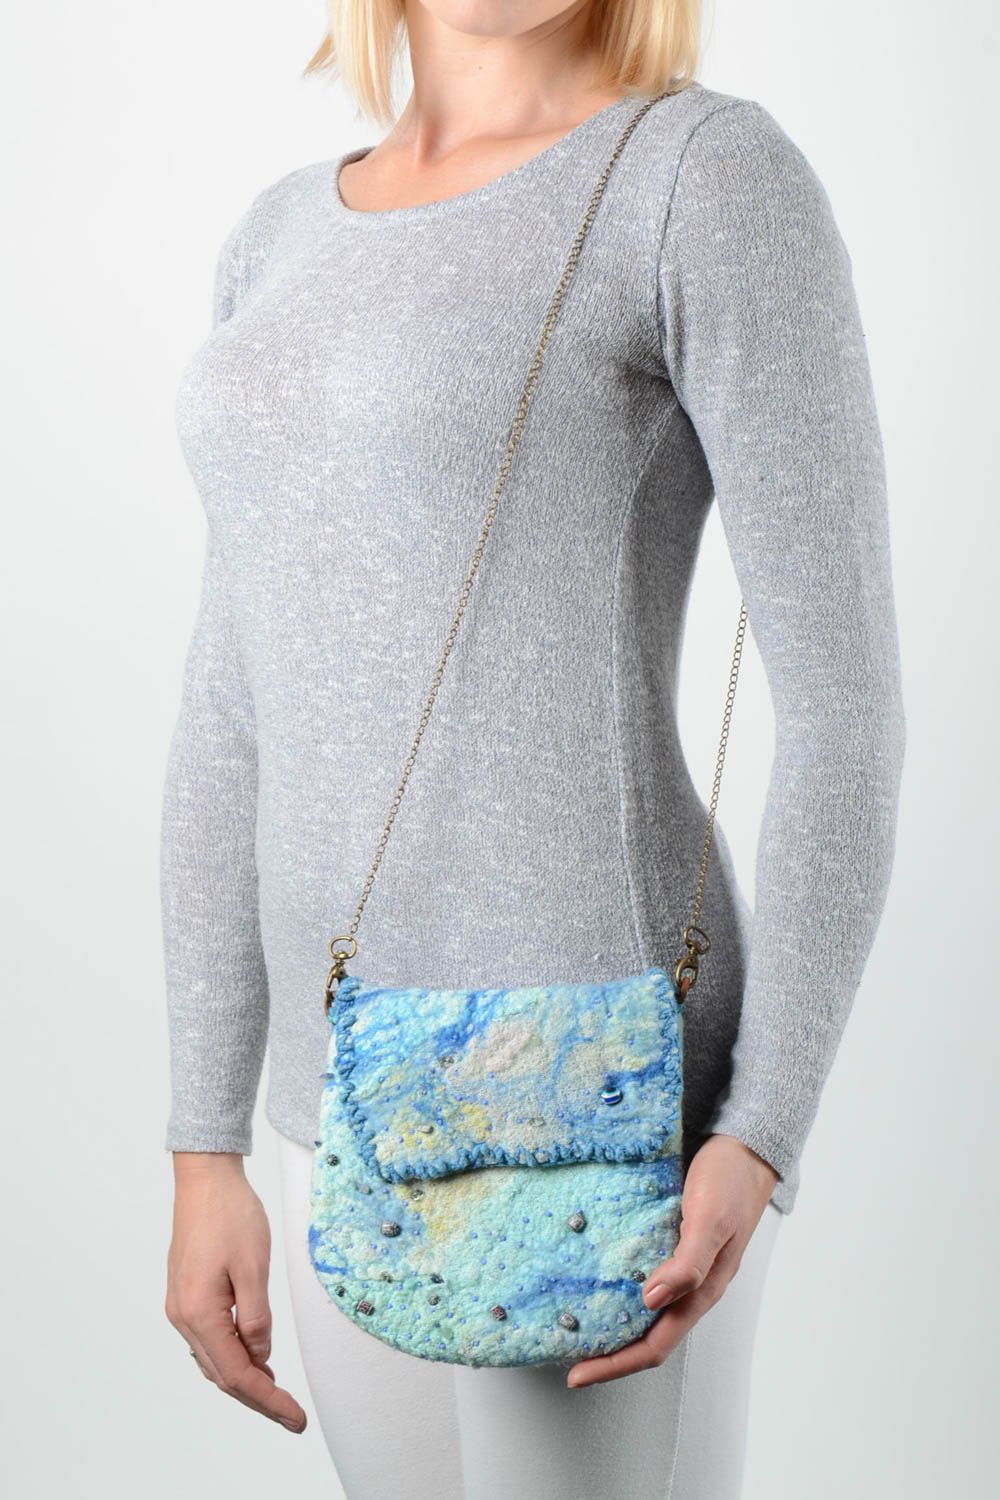 Handmade Tasche aus Wolle Accessoire für Frauen Clutch Tasche in Blau foto 1